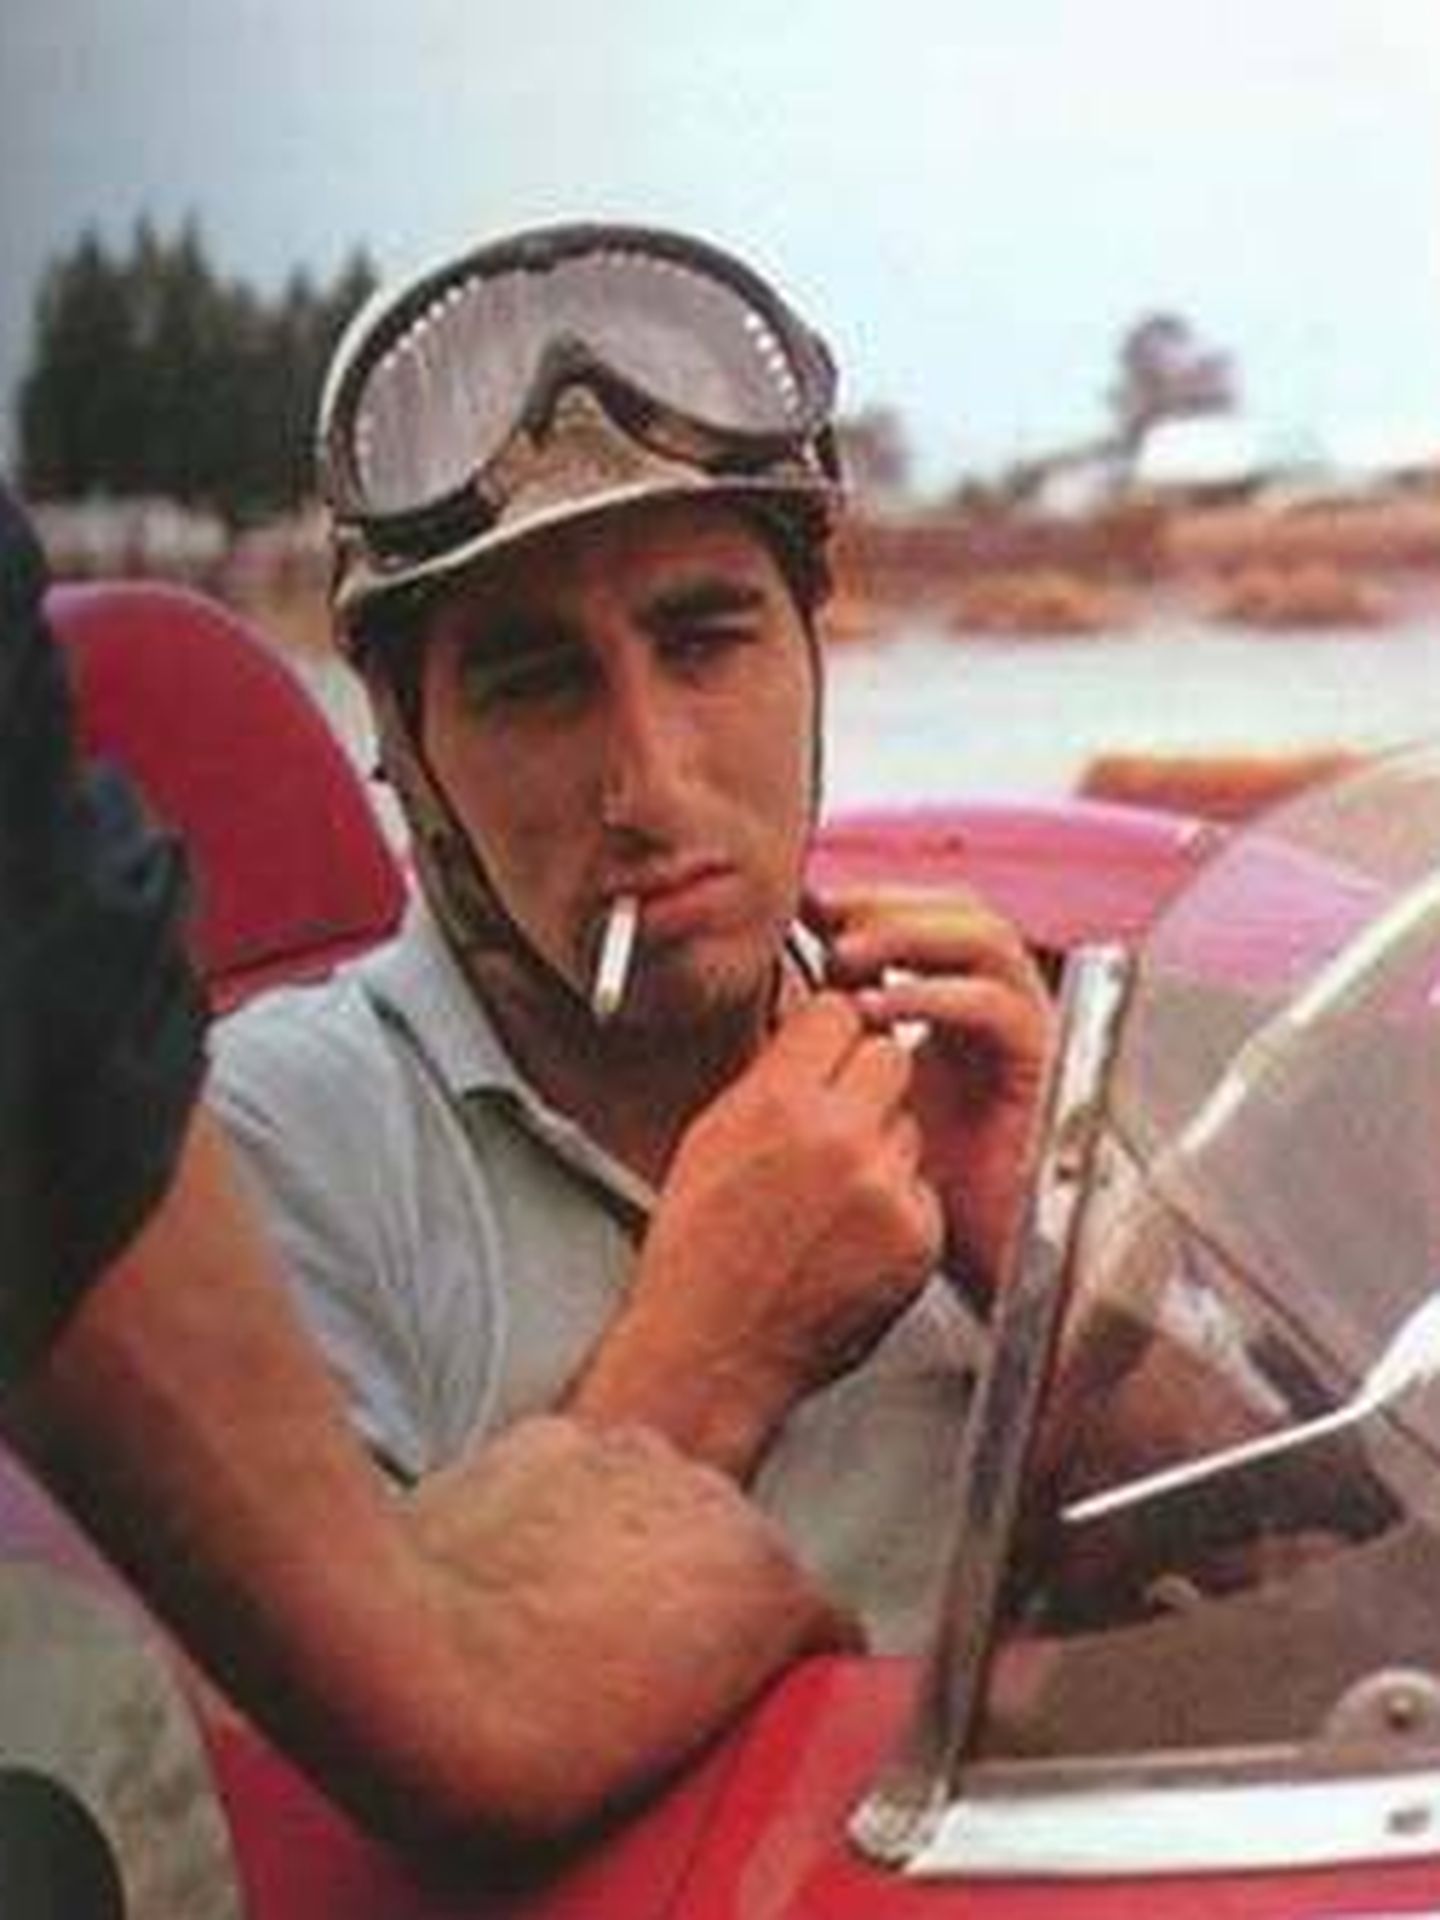 Fon de Portago subido al Ferrari con mientras fumaba.